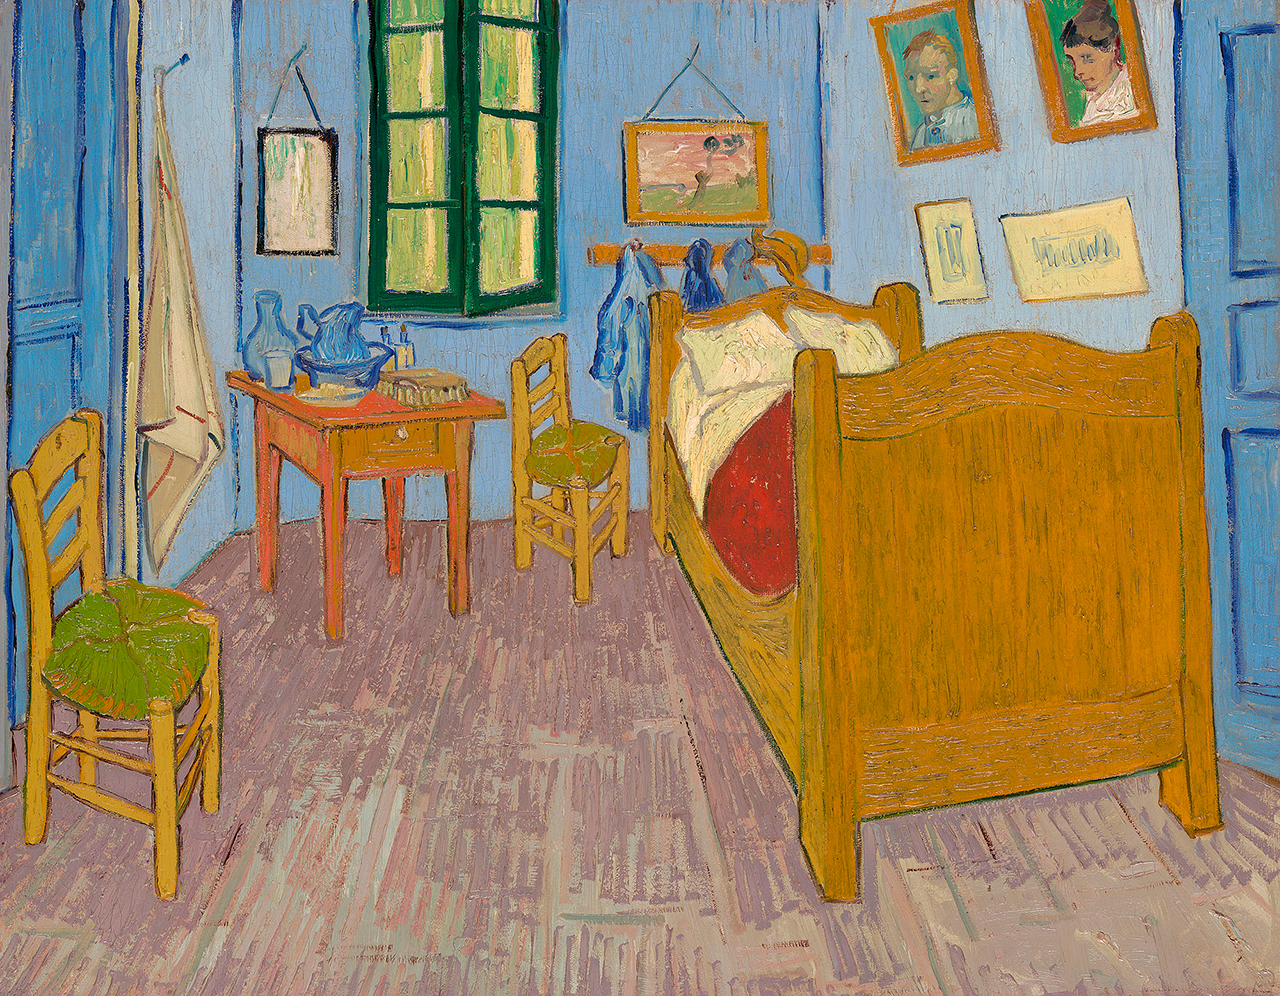 Vincent van Gogh, "The Bedroom" (1889), MusÃ©e d